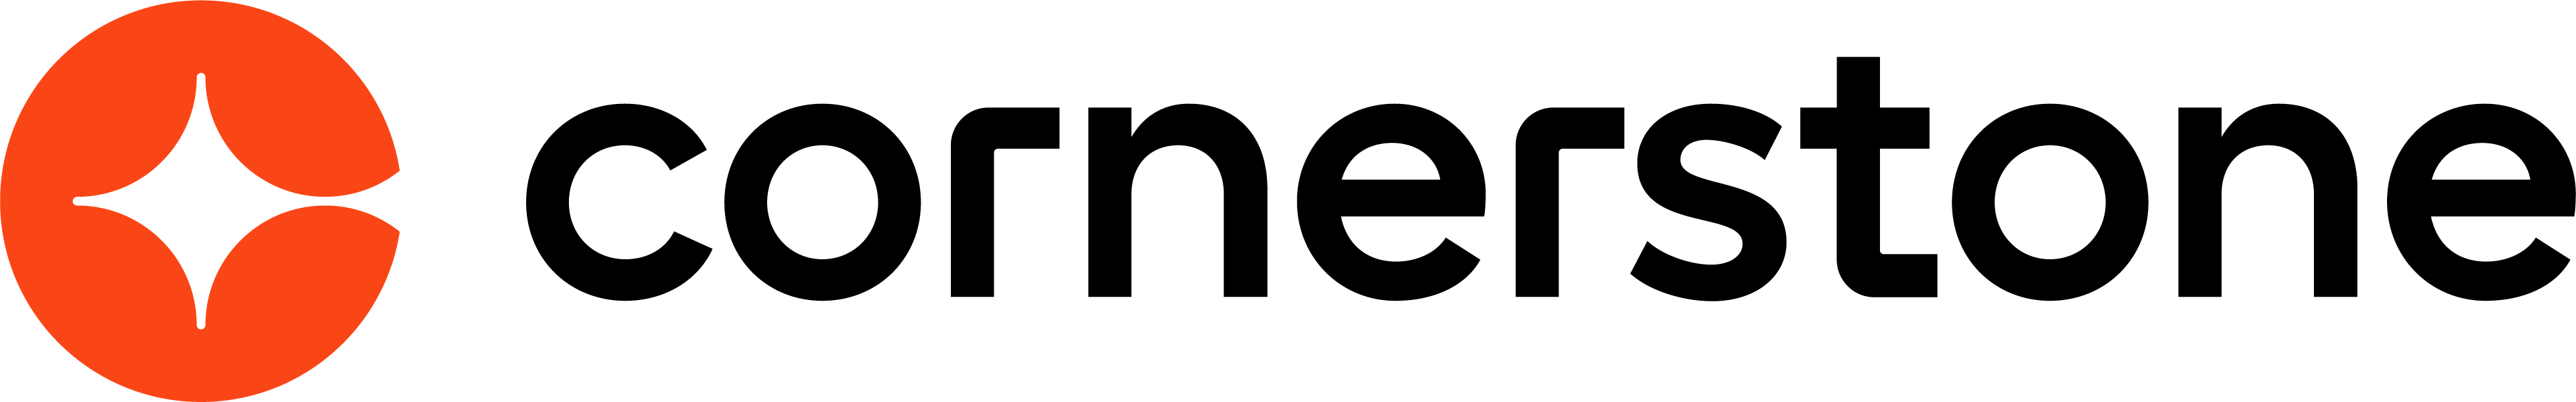 NEW-CSOD-logo-HRZ-RGB